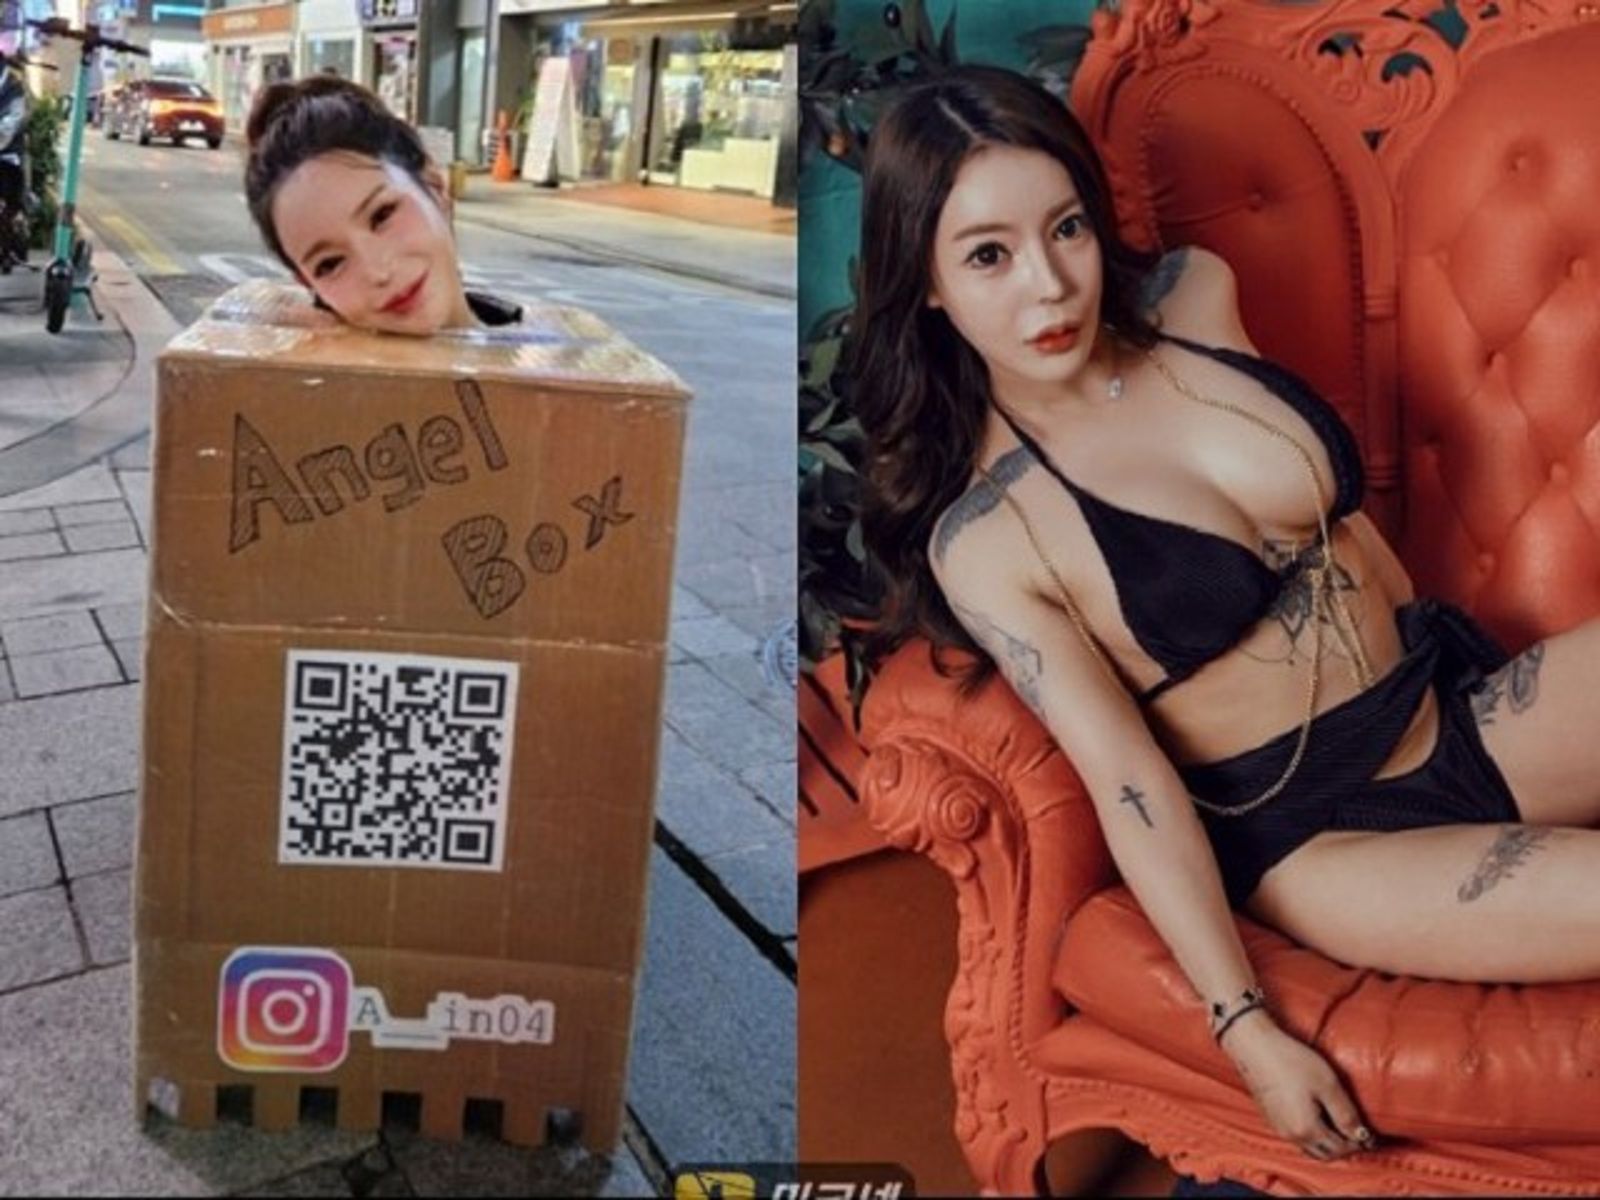 Fw: [新聞] AV女優全裸只罩「箱子衣」上街 胸部任人